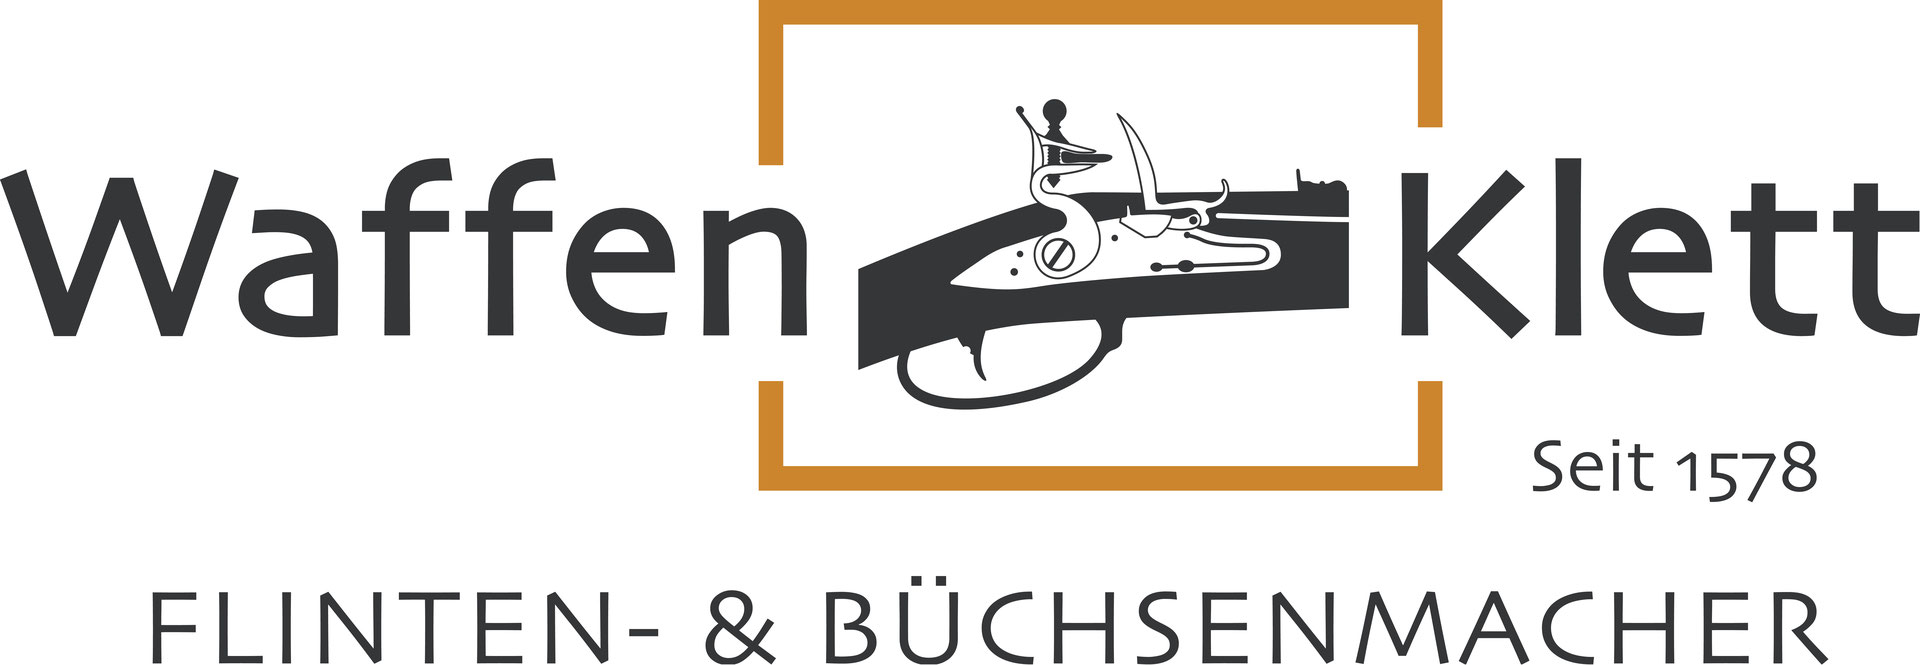 Herzlich Willkommen - Waffen Klett e.K. Flinten- & Büchsenmacher seit 1578  - Gun- and Riflemaker since 158